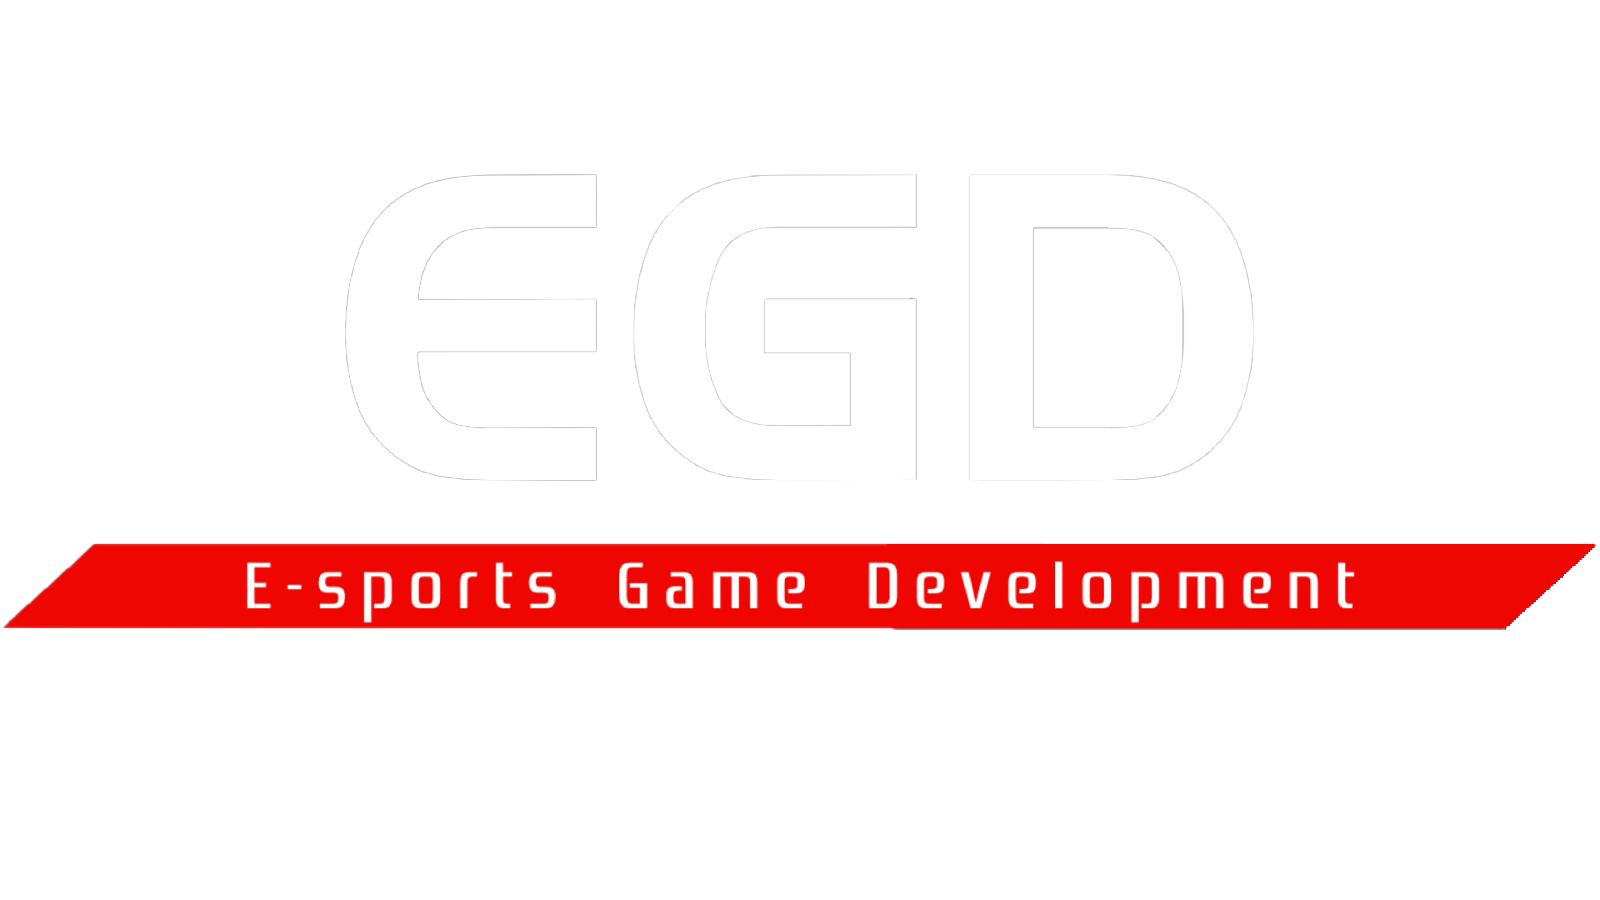 EGD E-Sports Game Development